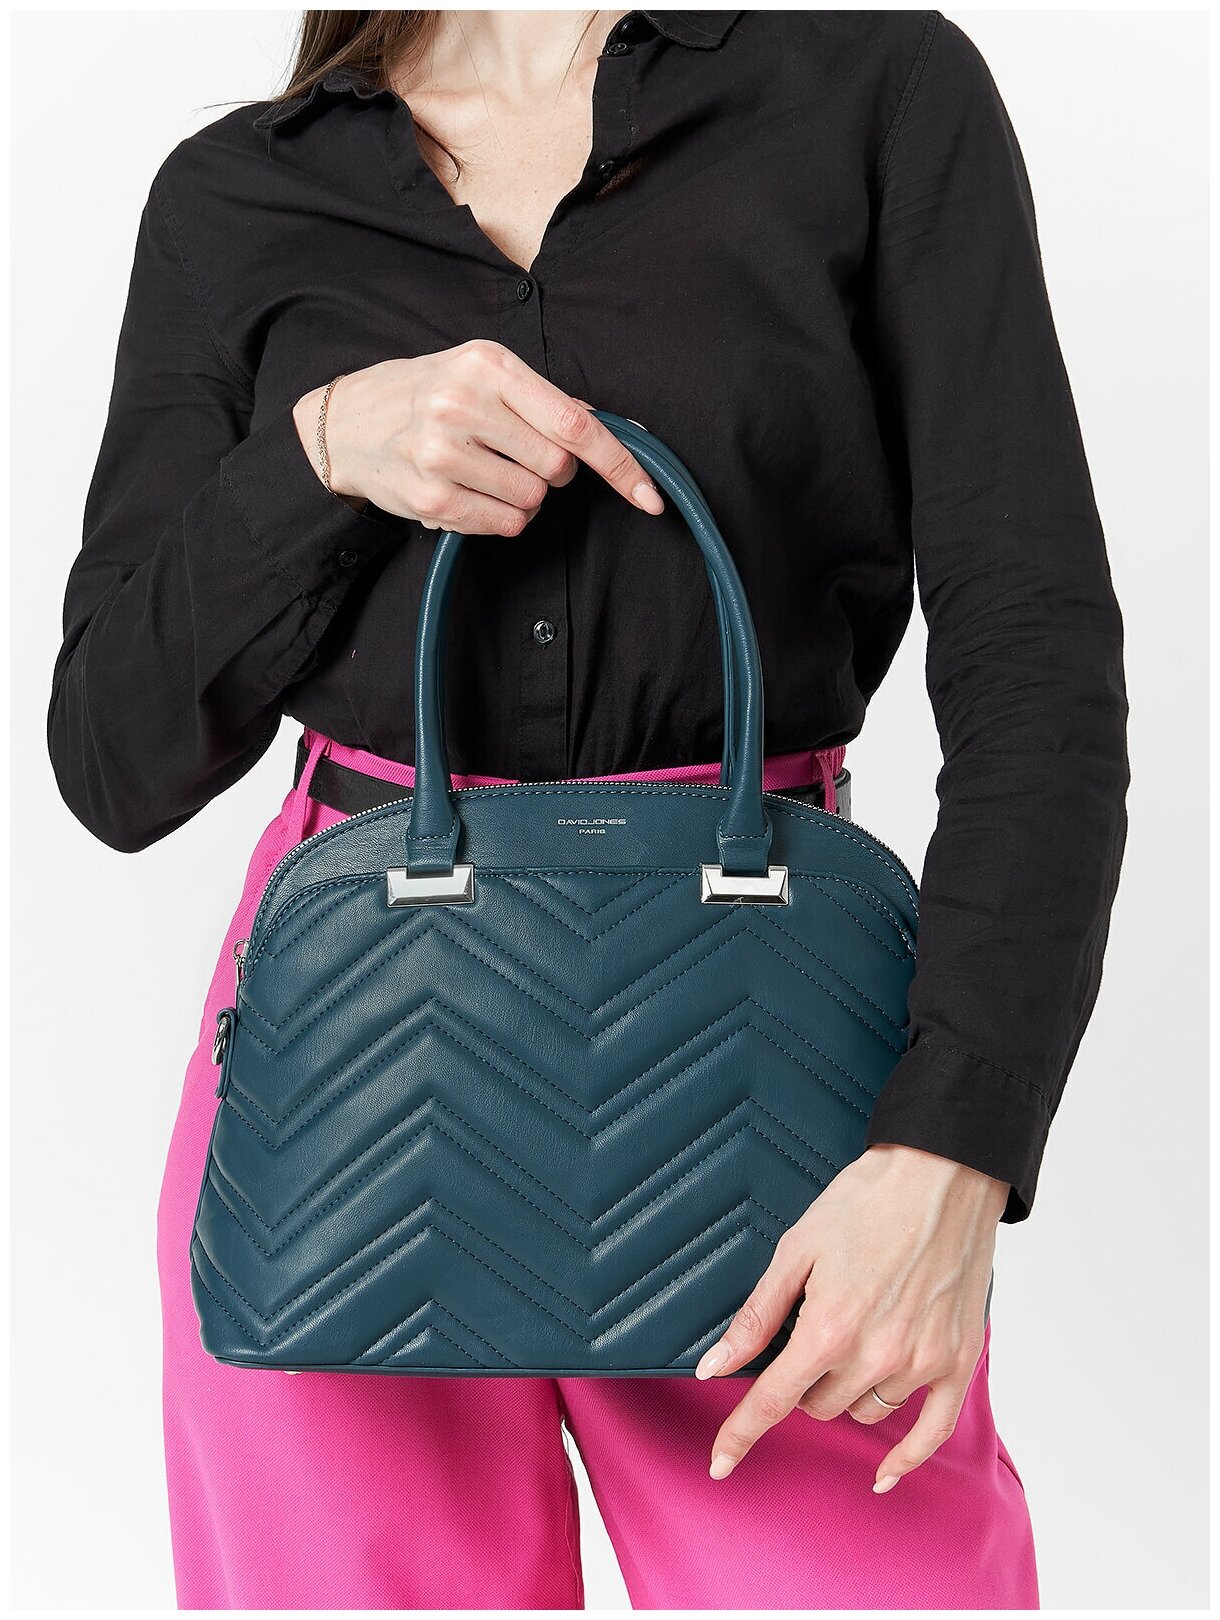 Стильная, влагозащитная, надежная и практичная женская сумка из экокожи David Jones 6615-1K/PEACOCK-BLUE